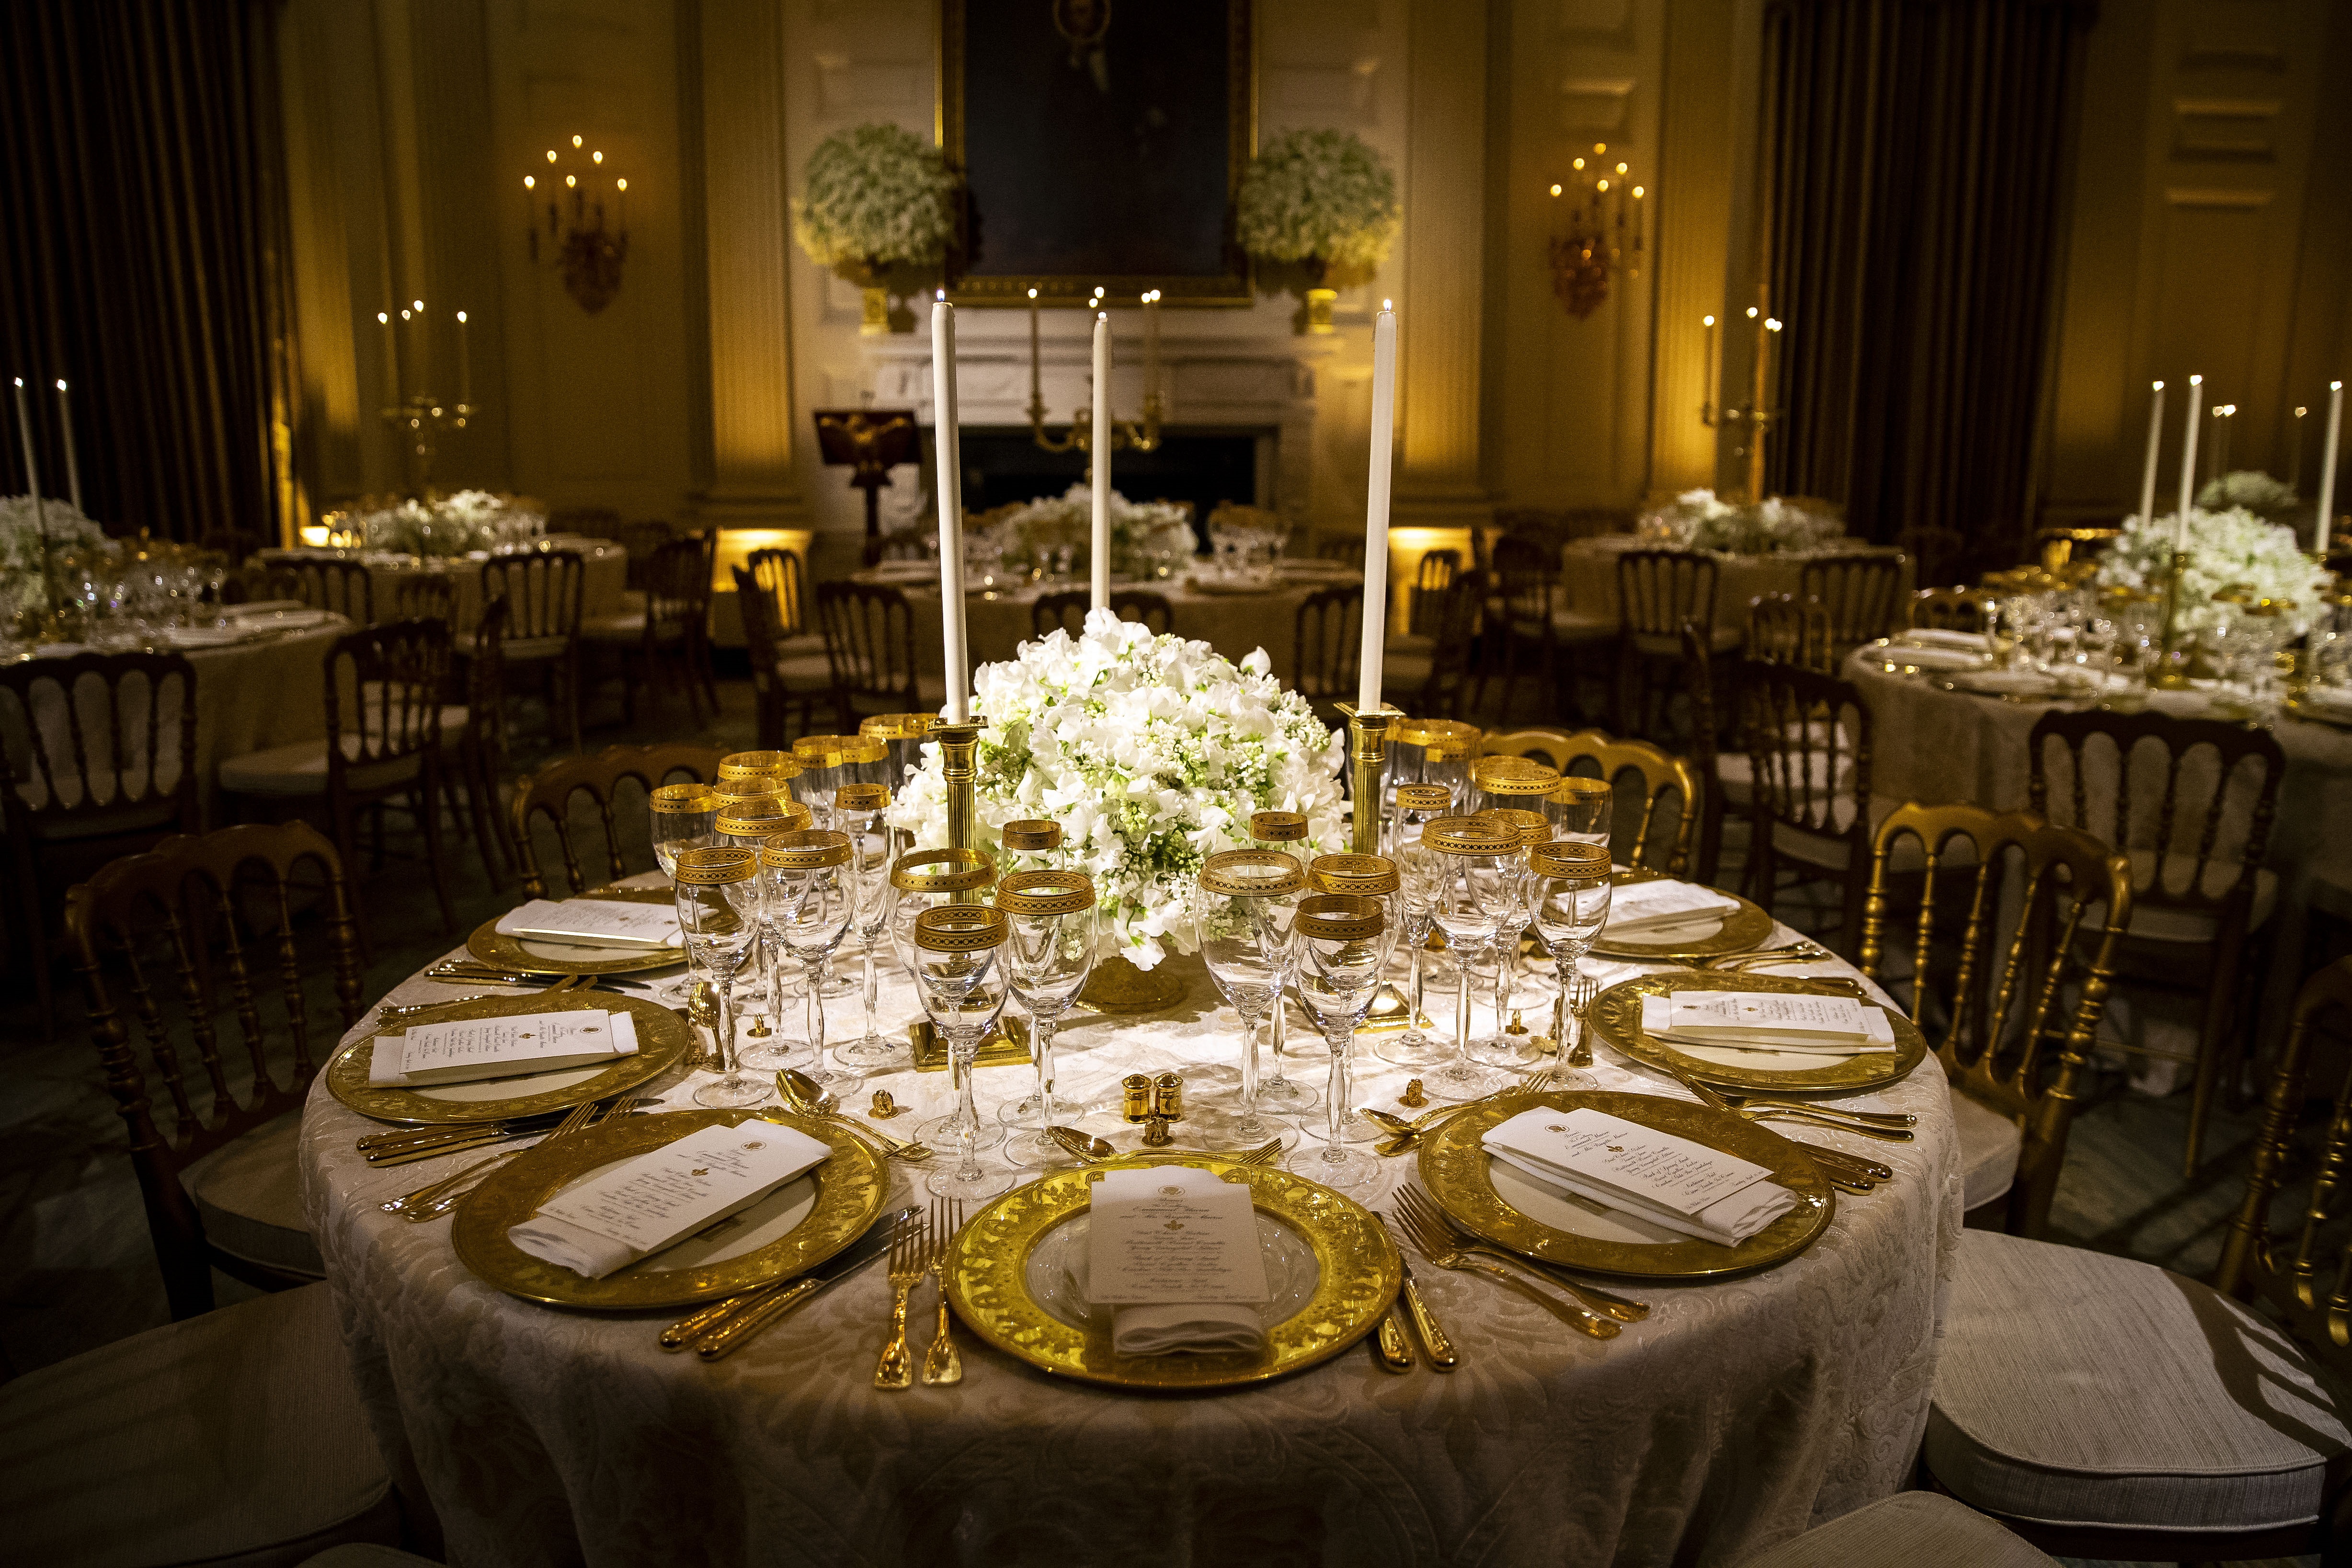 За кратко репортери бяха допуснати до залата, в която се проведе вечерята. Те бяха посрещнати от изящно подредени маси – златни чаши за вино, златни свещници, златни столове, ситуирани около масите,украсени с изящни цветя в бяло и зелено